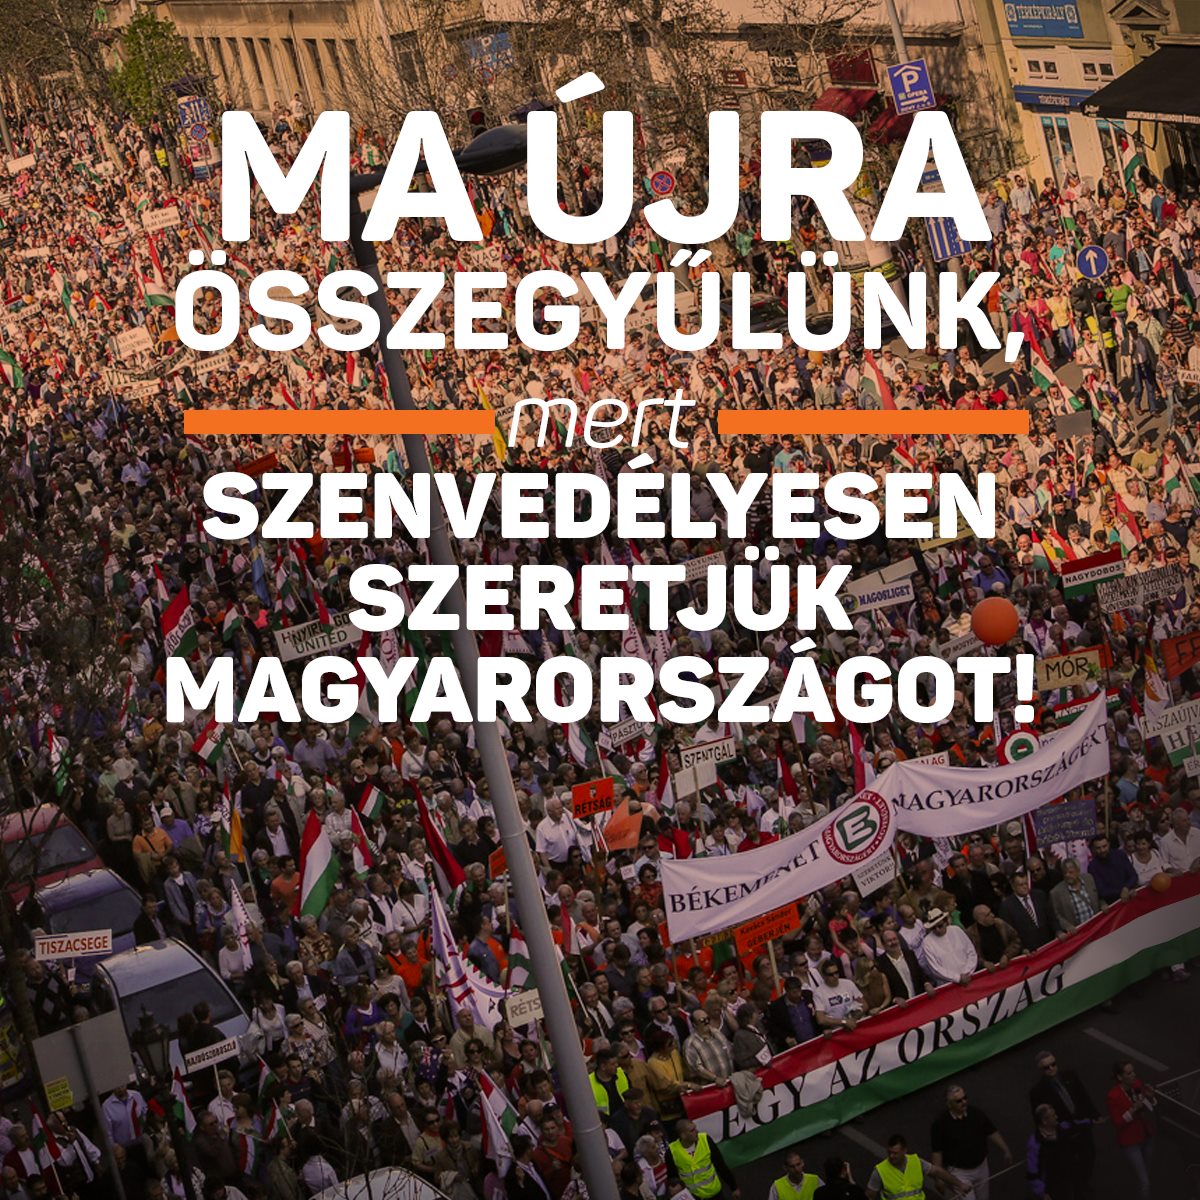 Szenvedélyesen szeretjük Magyarországot és készen állunk, hogy mindent megtegyünk érte. Találkozzunk a Békemeneten!